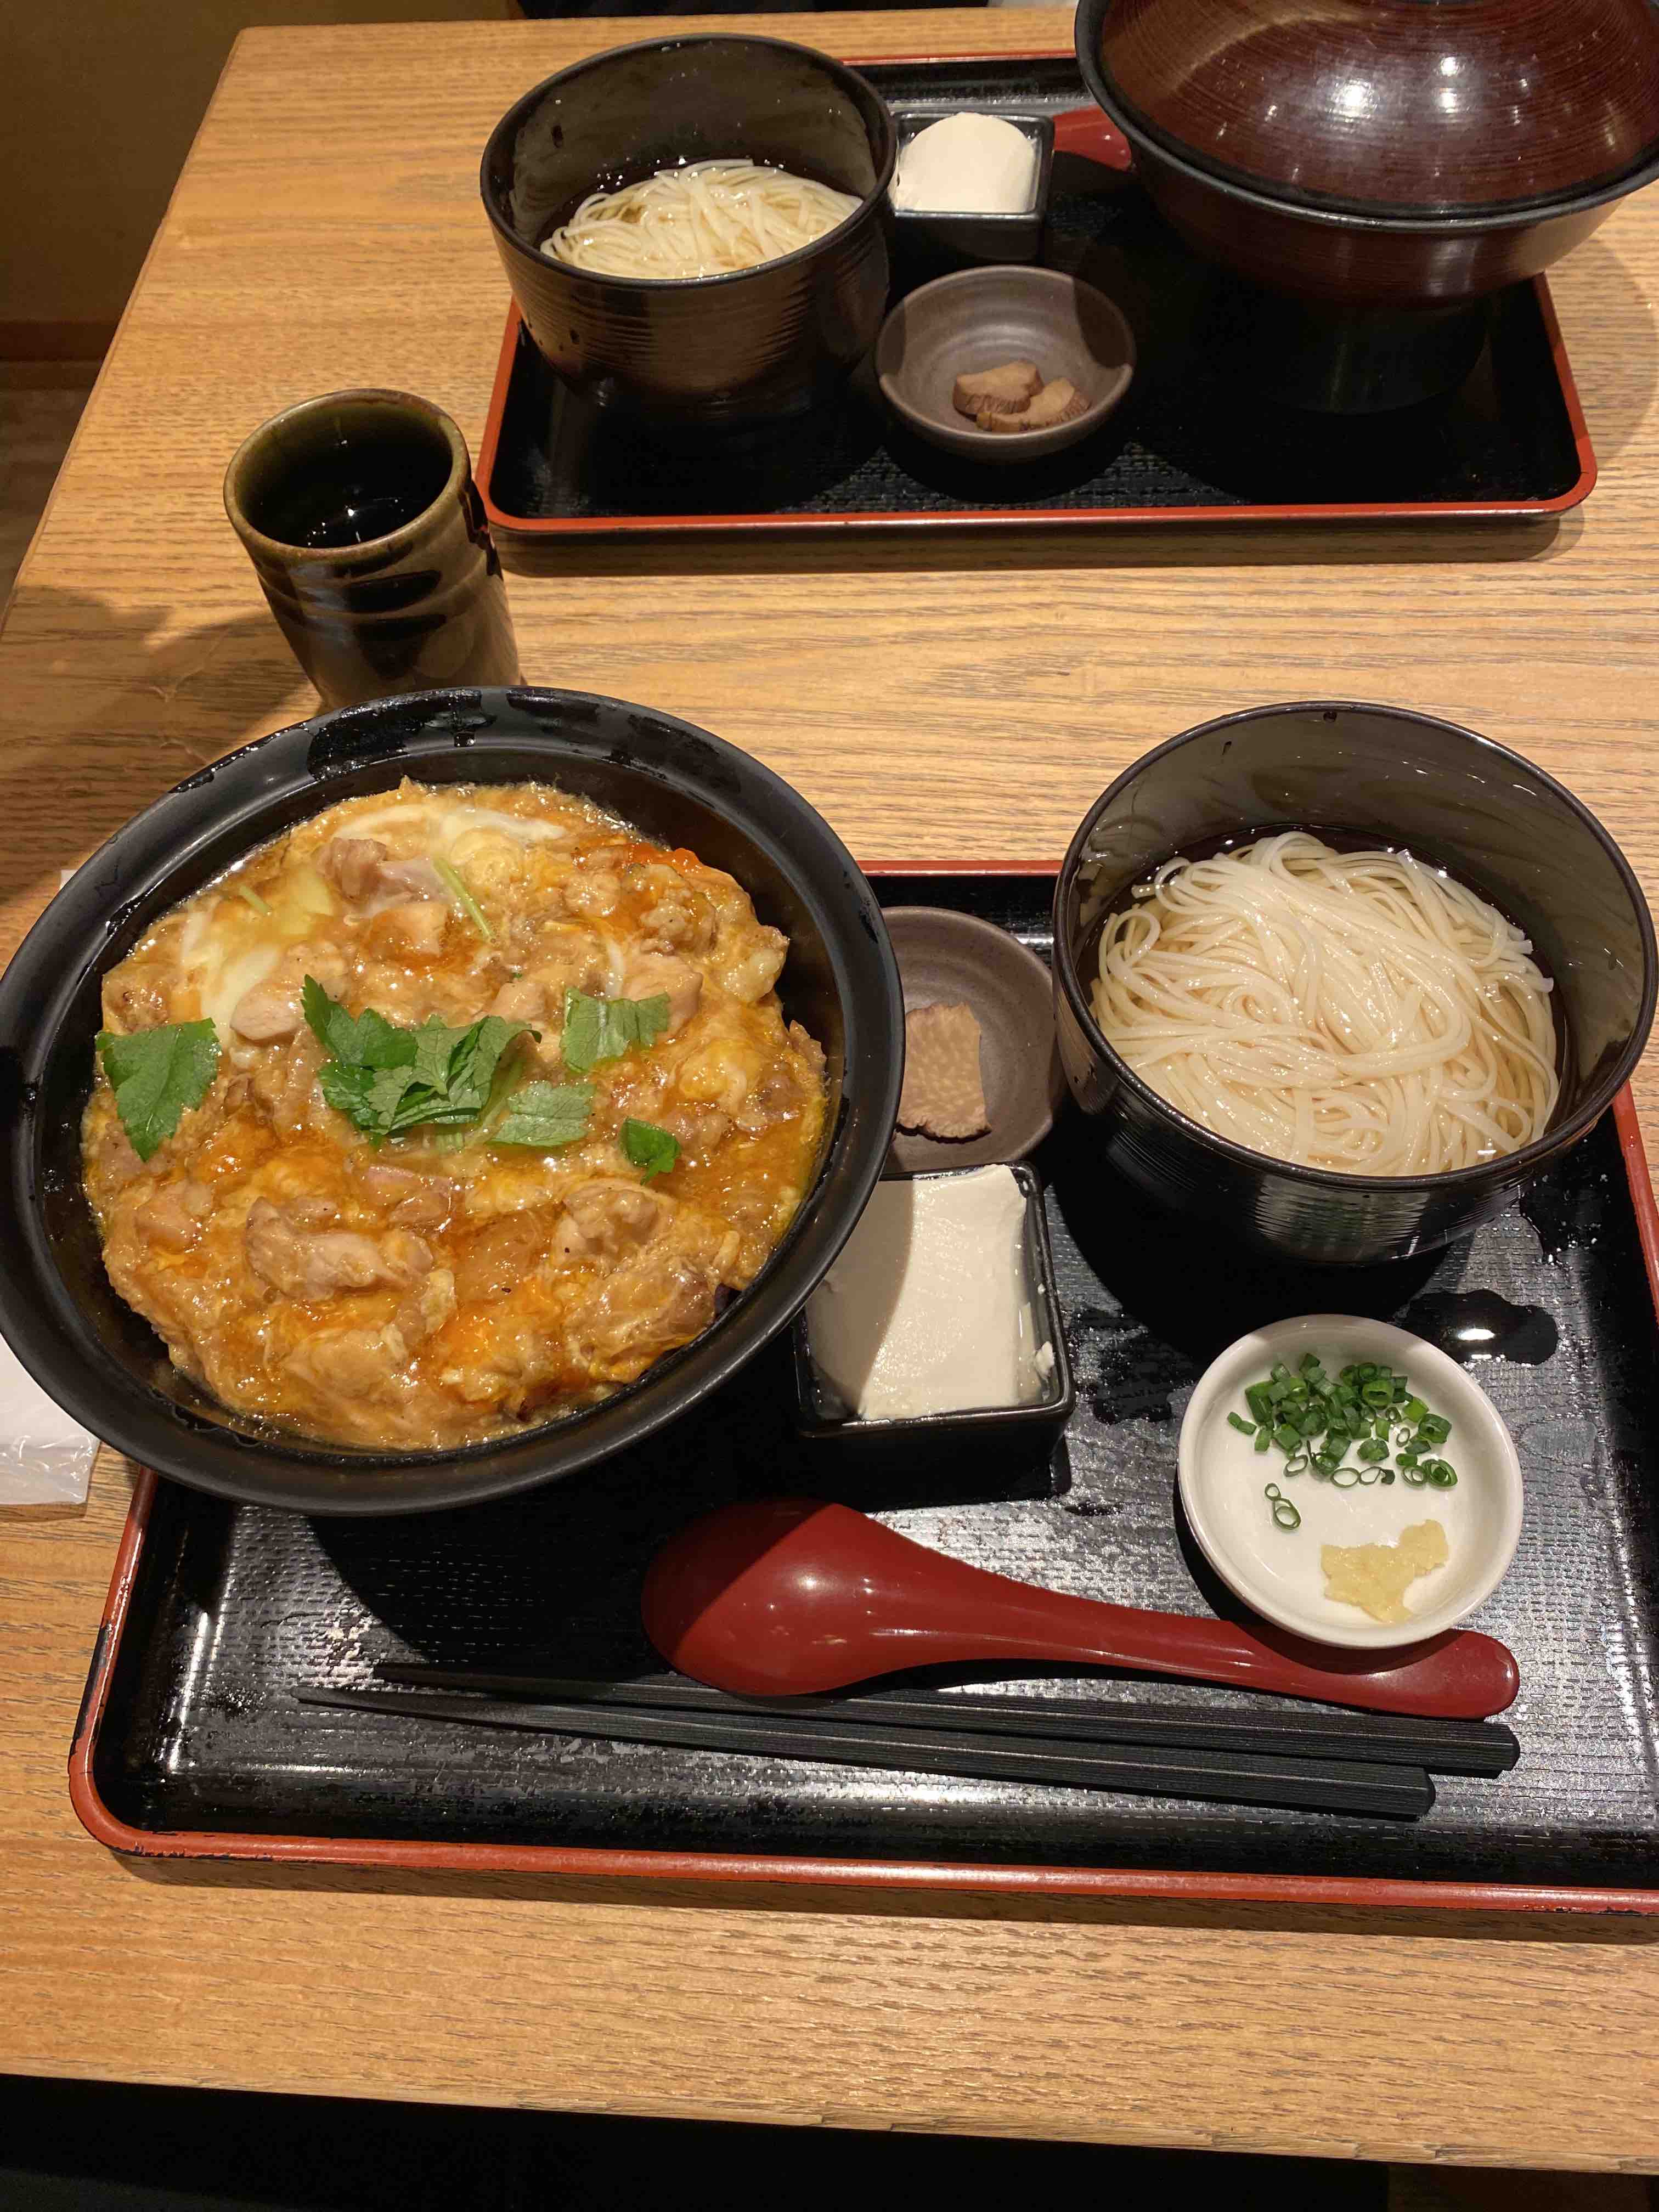 Last meal in Japan